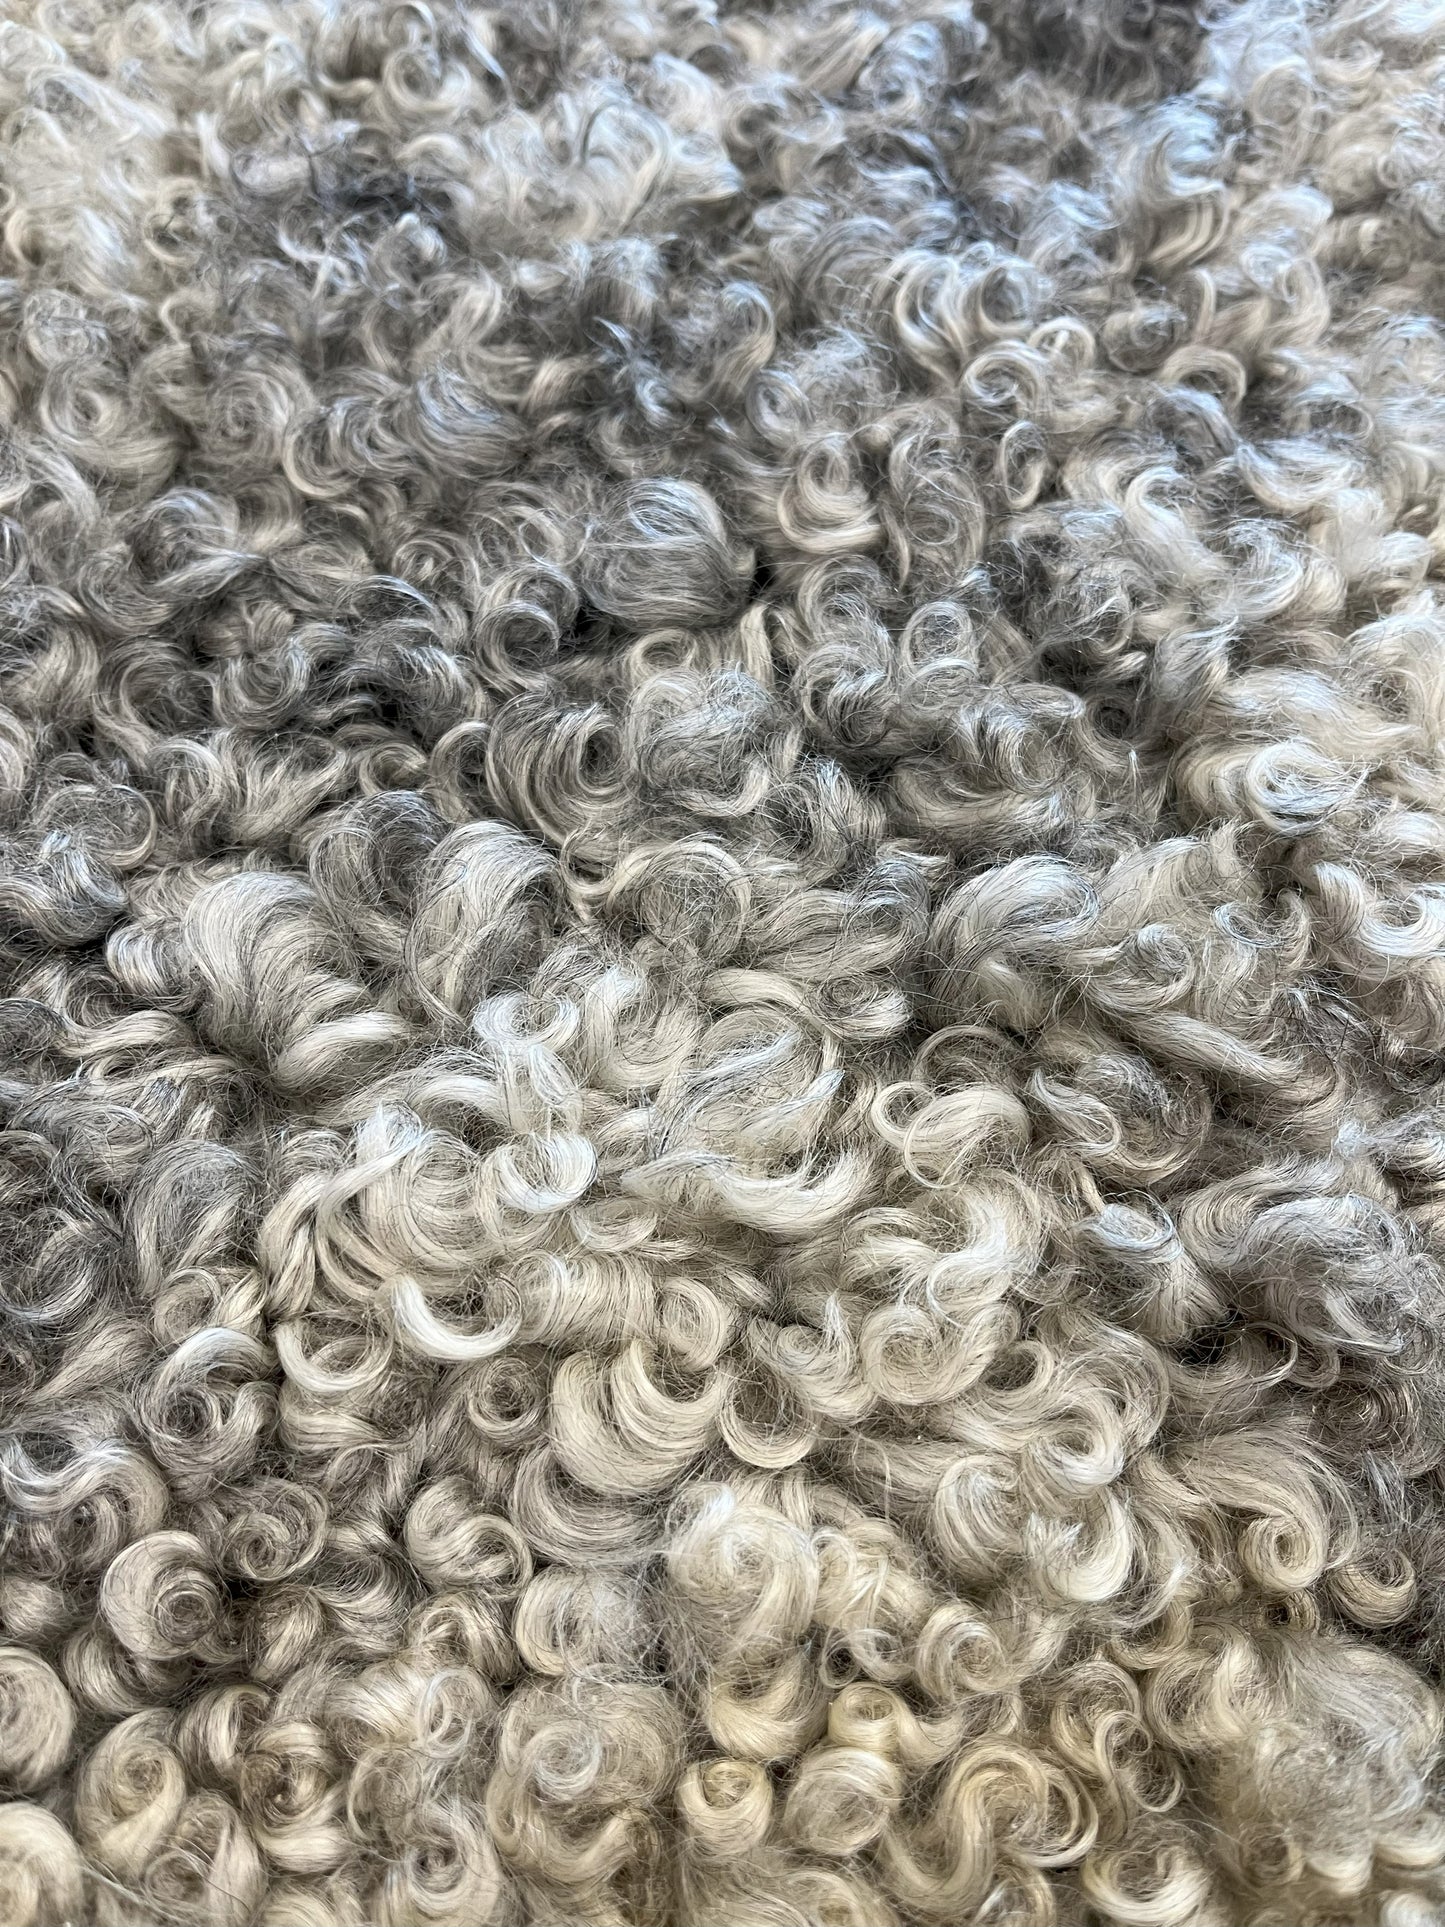 ONE OF THE KIND Gotland Grey Medium Wool Sheepskin